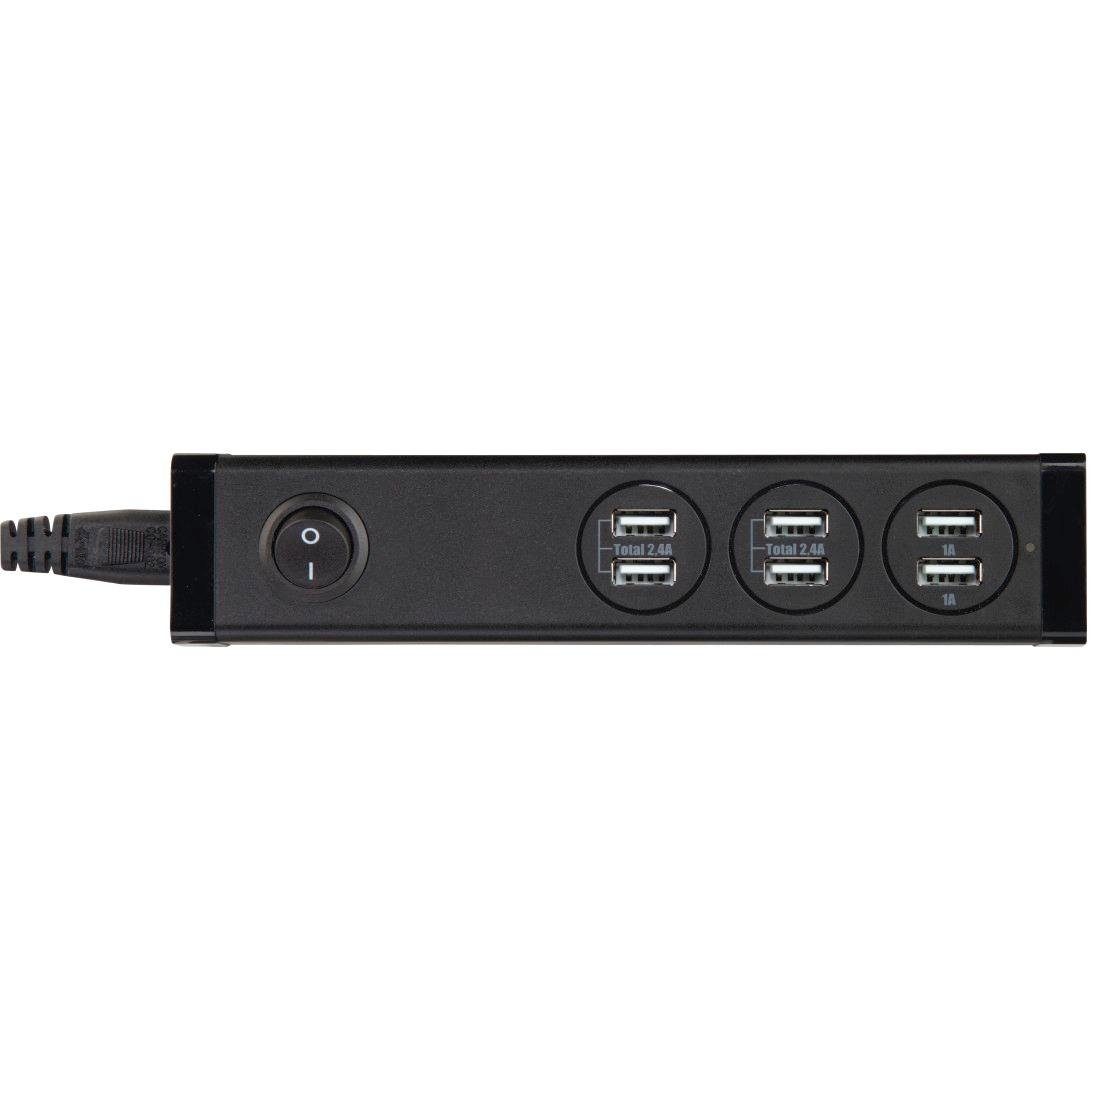 Hama »USB Ladestation 6-Port mit Schalter für Handy, Tablet etc. Multi  Ladegerät für Steckdose« Ladestation online kaufen | OTTO